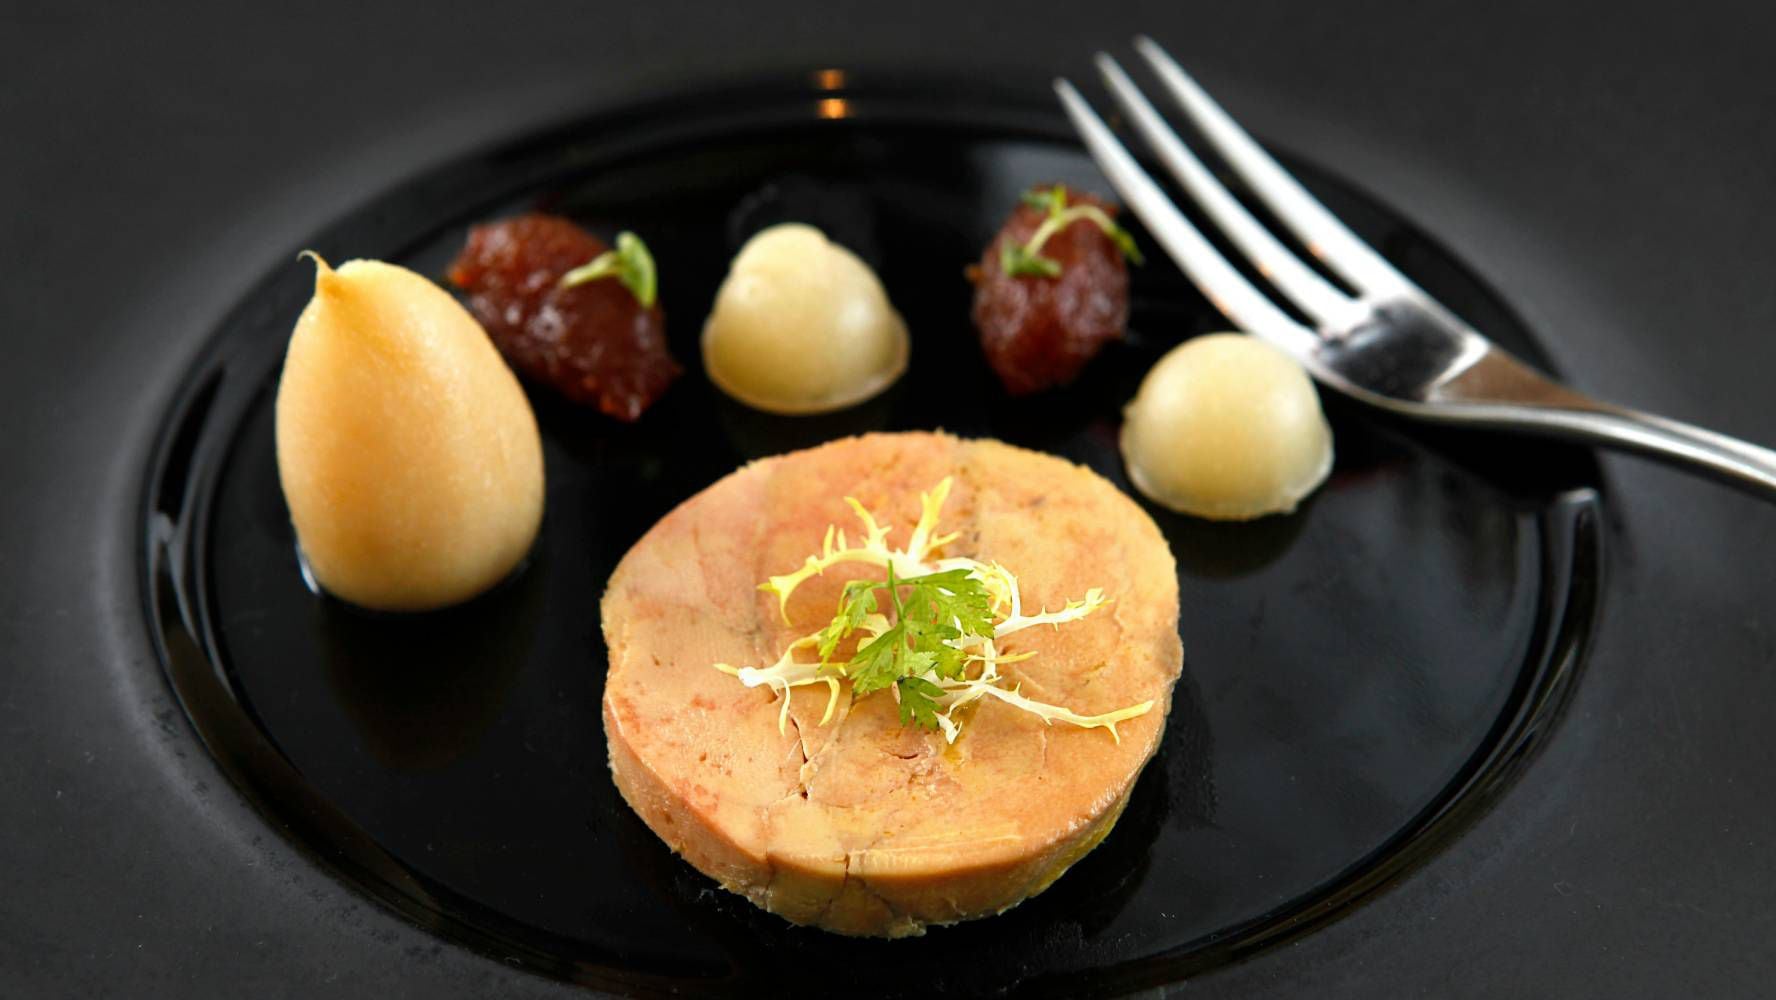 El foie gras es un platillo elaborado con hígado de pato o ganso que es considerado un alimento que atenta contra la vida de estas especies. (Foto: Pexels).